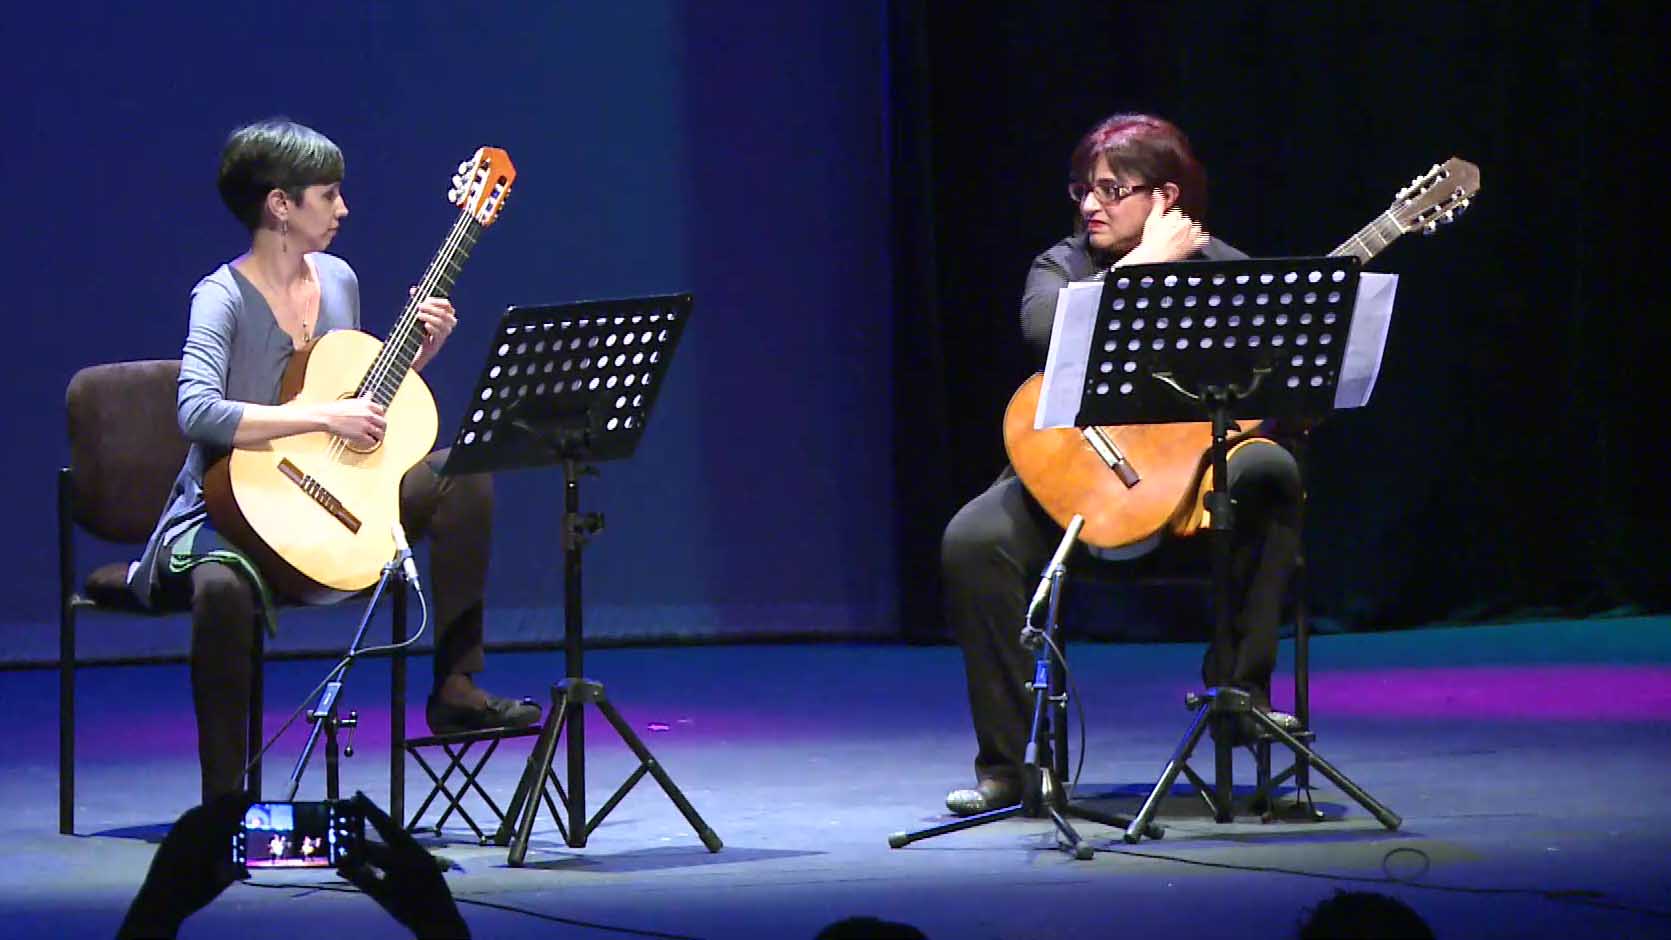 Guitarras del Mundo brillaron en la noche del jueves en el Teatro Lírico